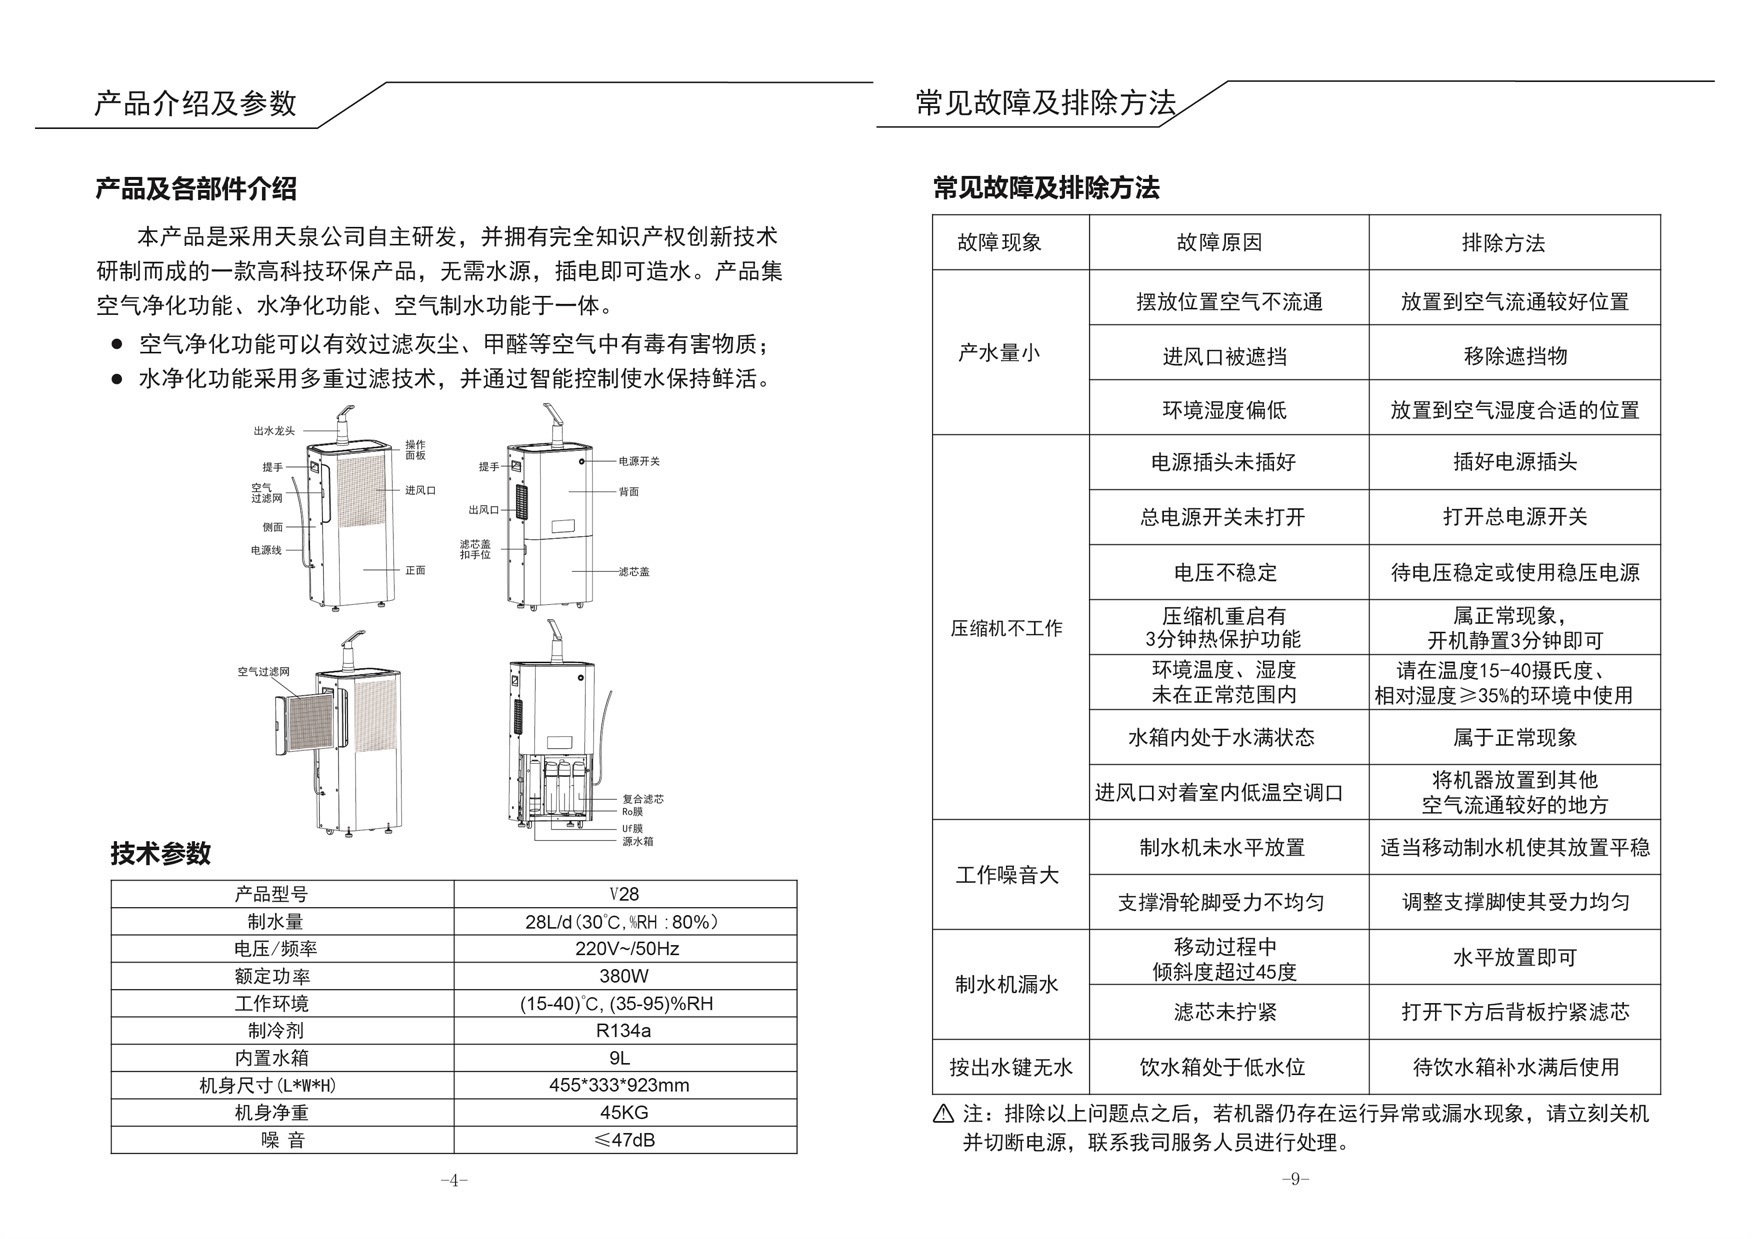 V28 manual (Chinese version)